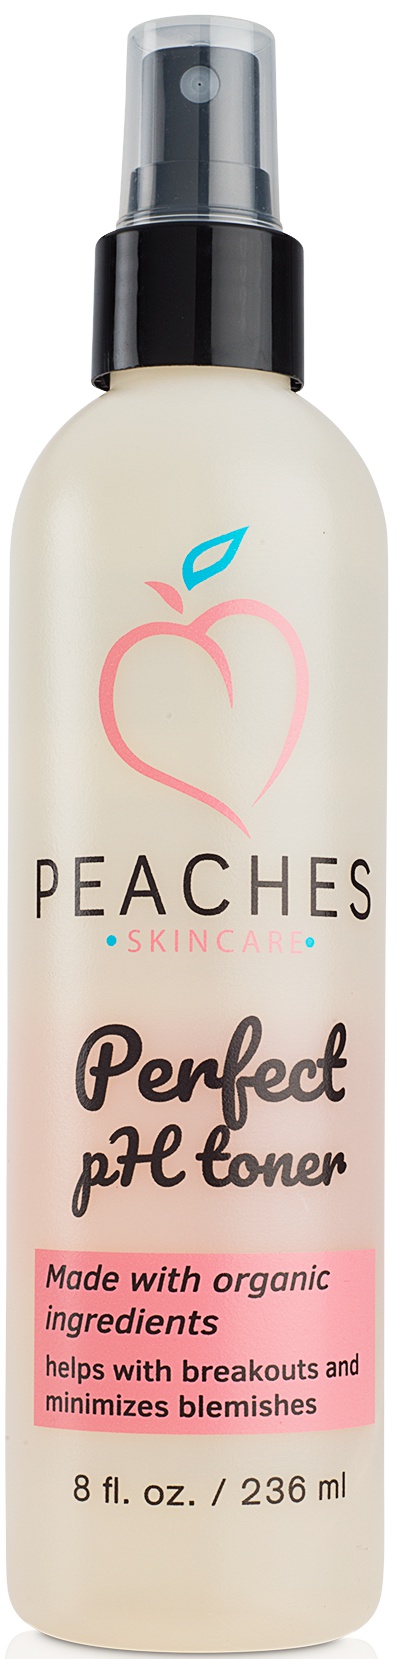 Peaches Skincare Perfect pH Toner